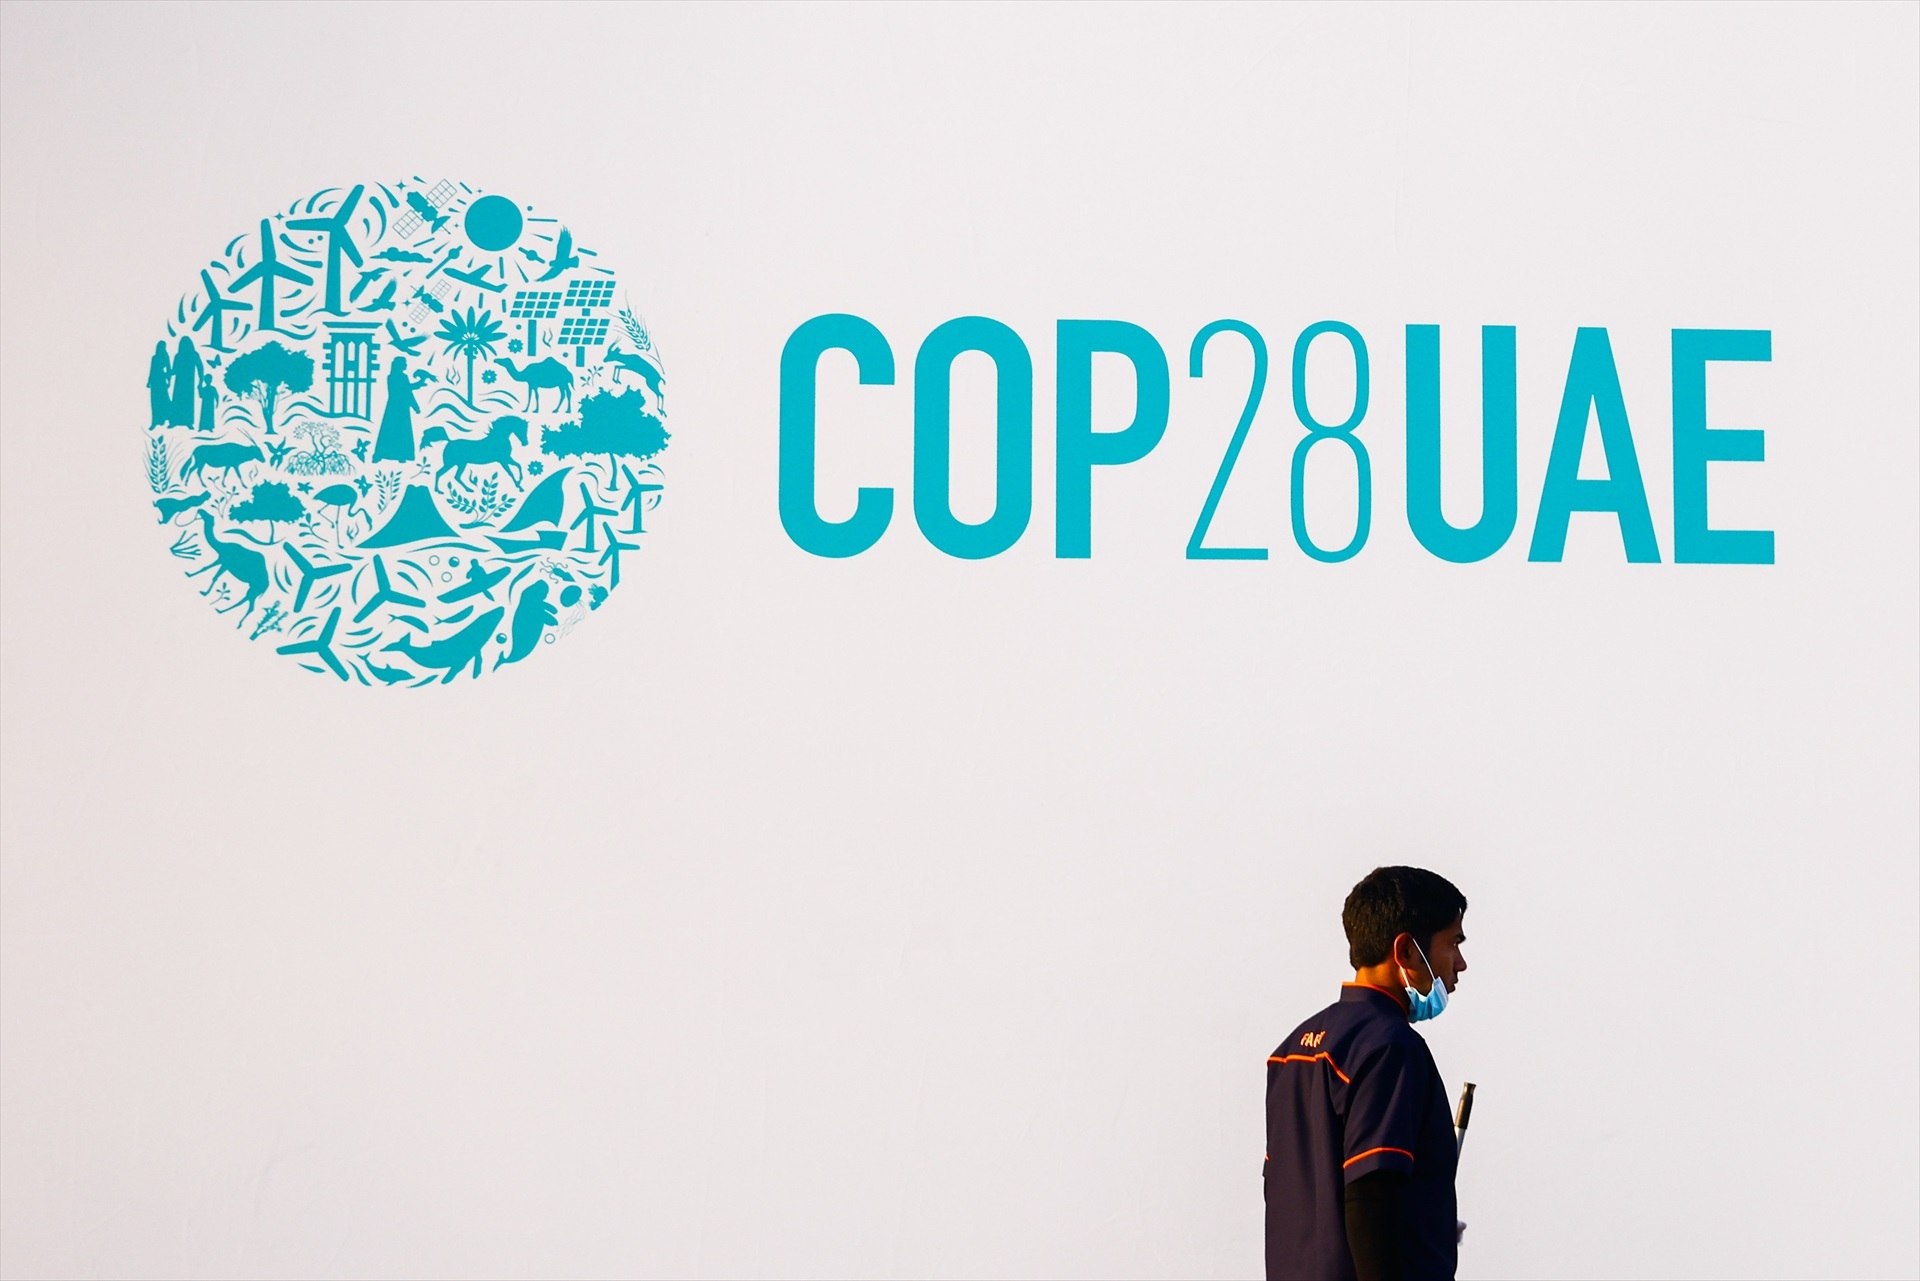 La COP28: el fòrum clau per decidir sobre el futur del planeta